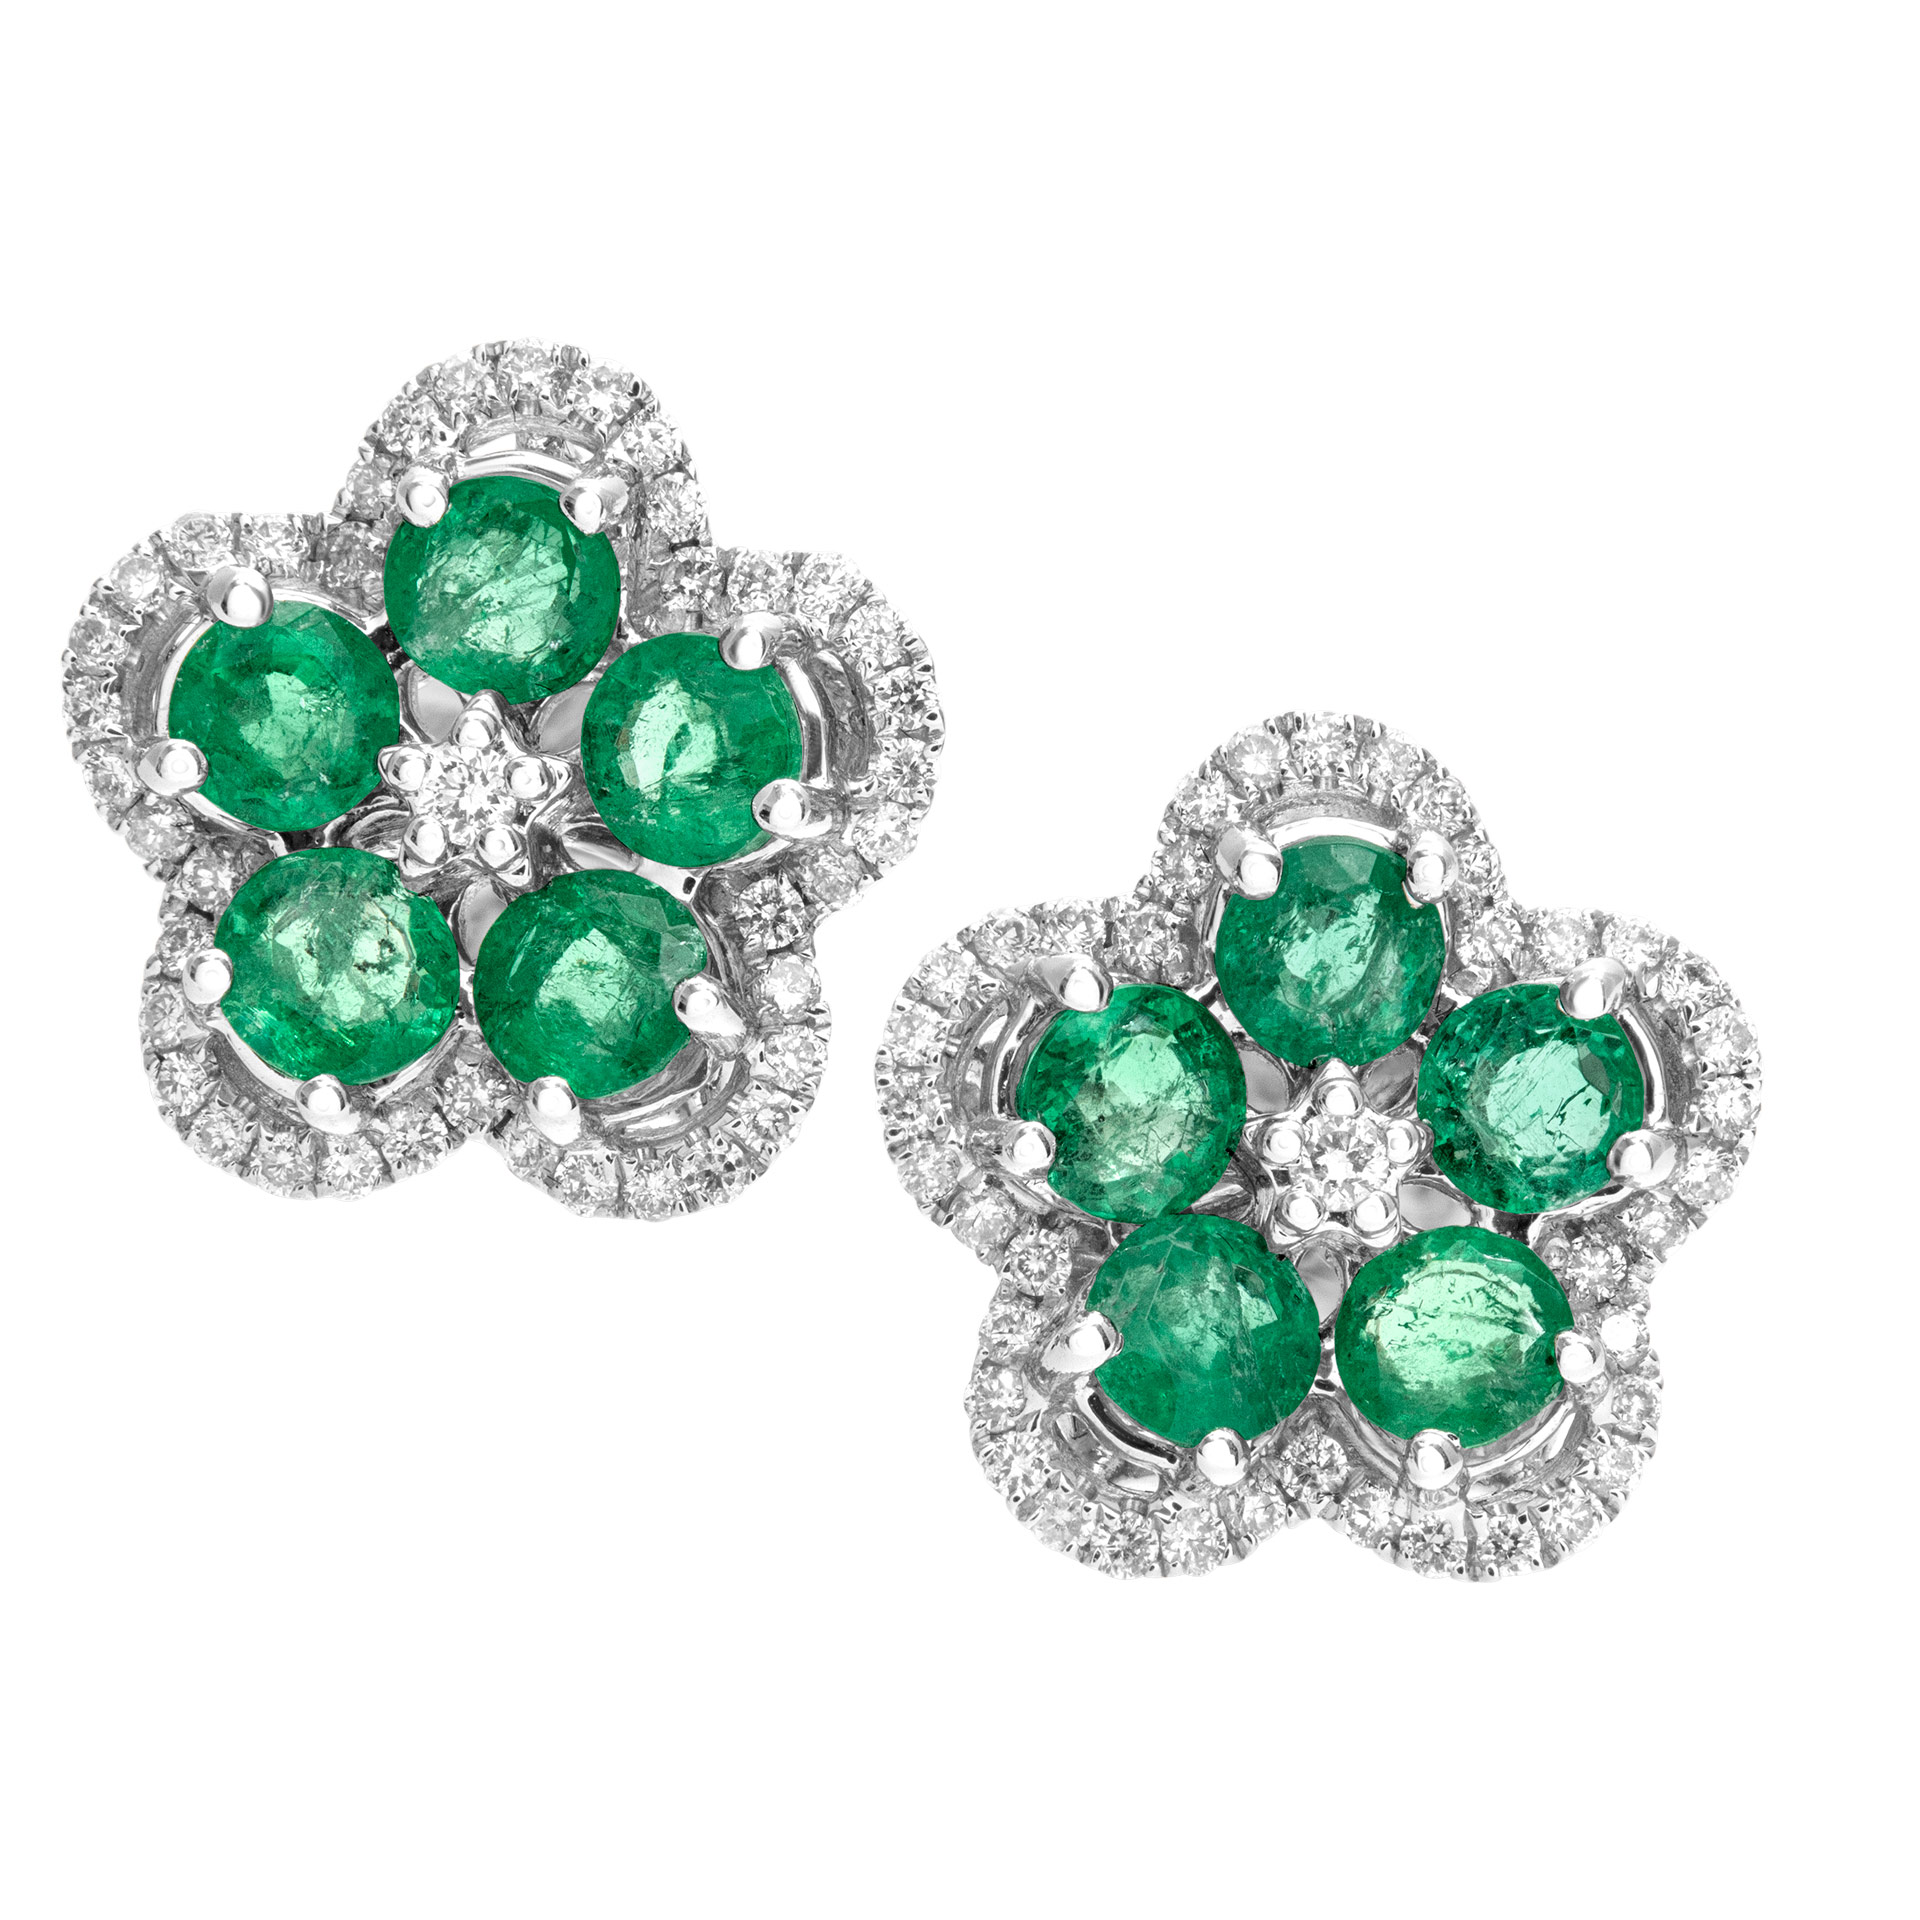 Emerald and diamond flower earrings in 18k white gold